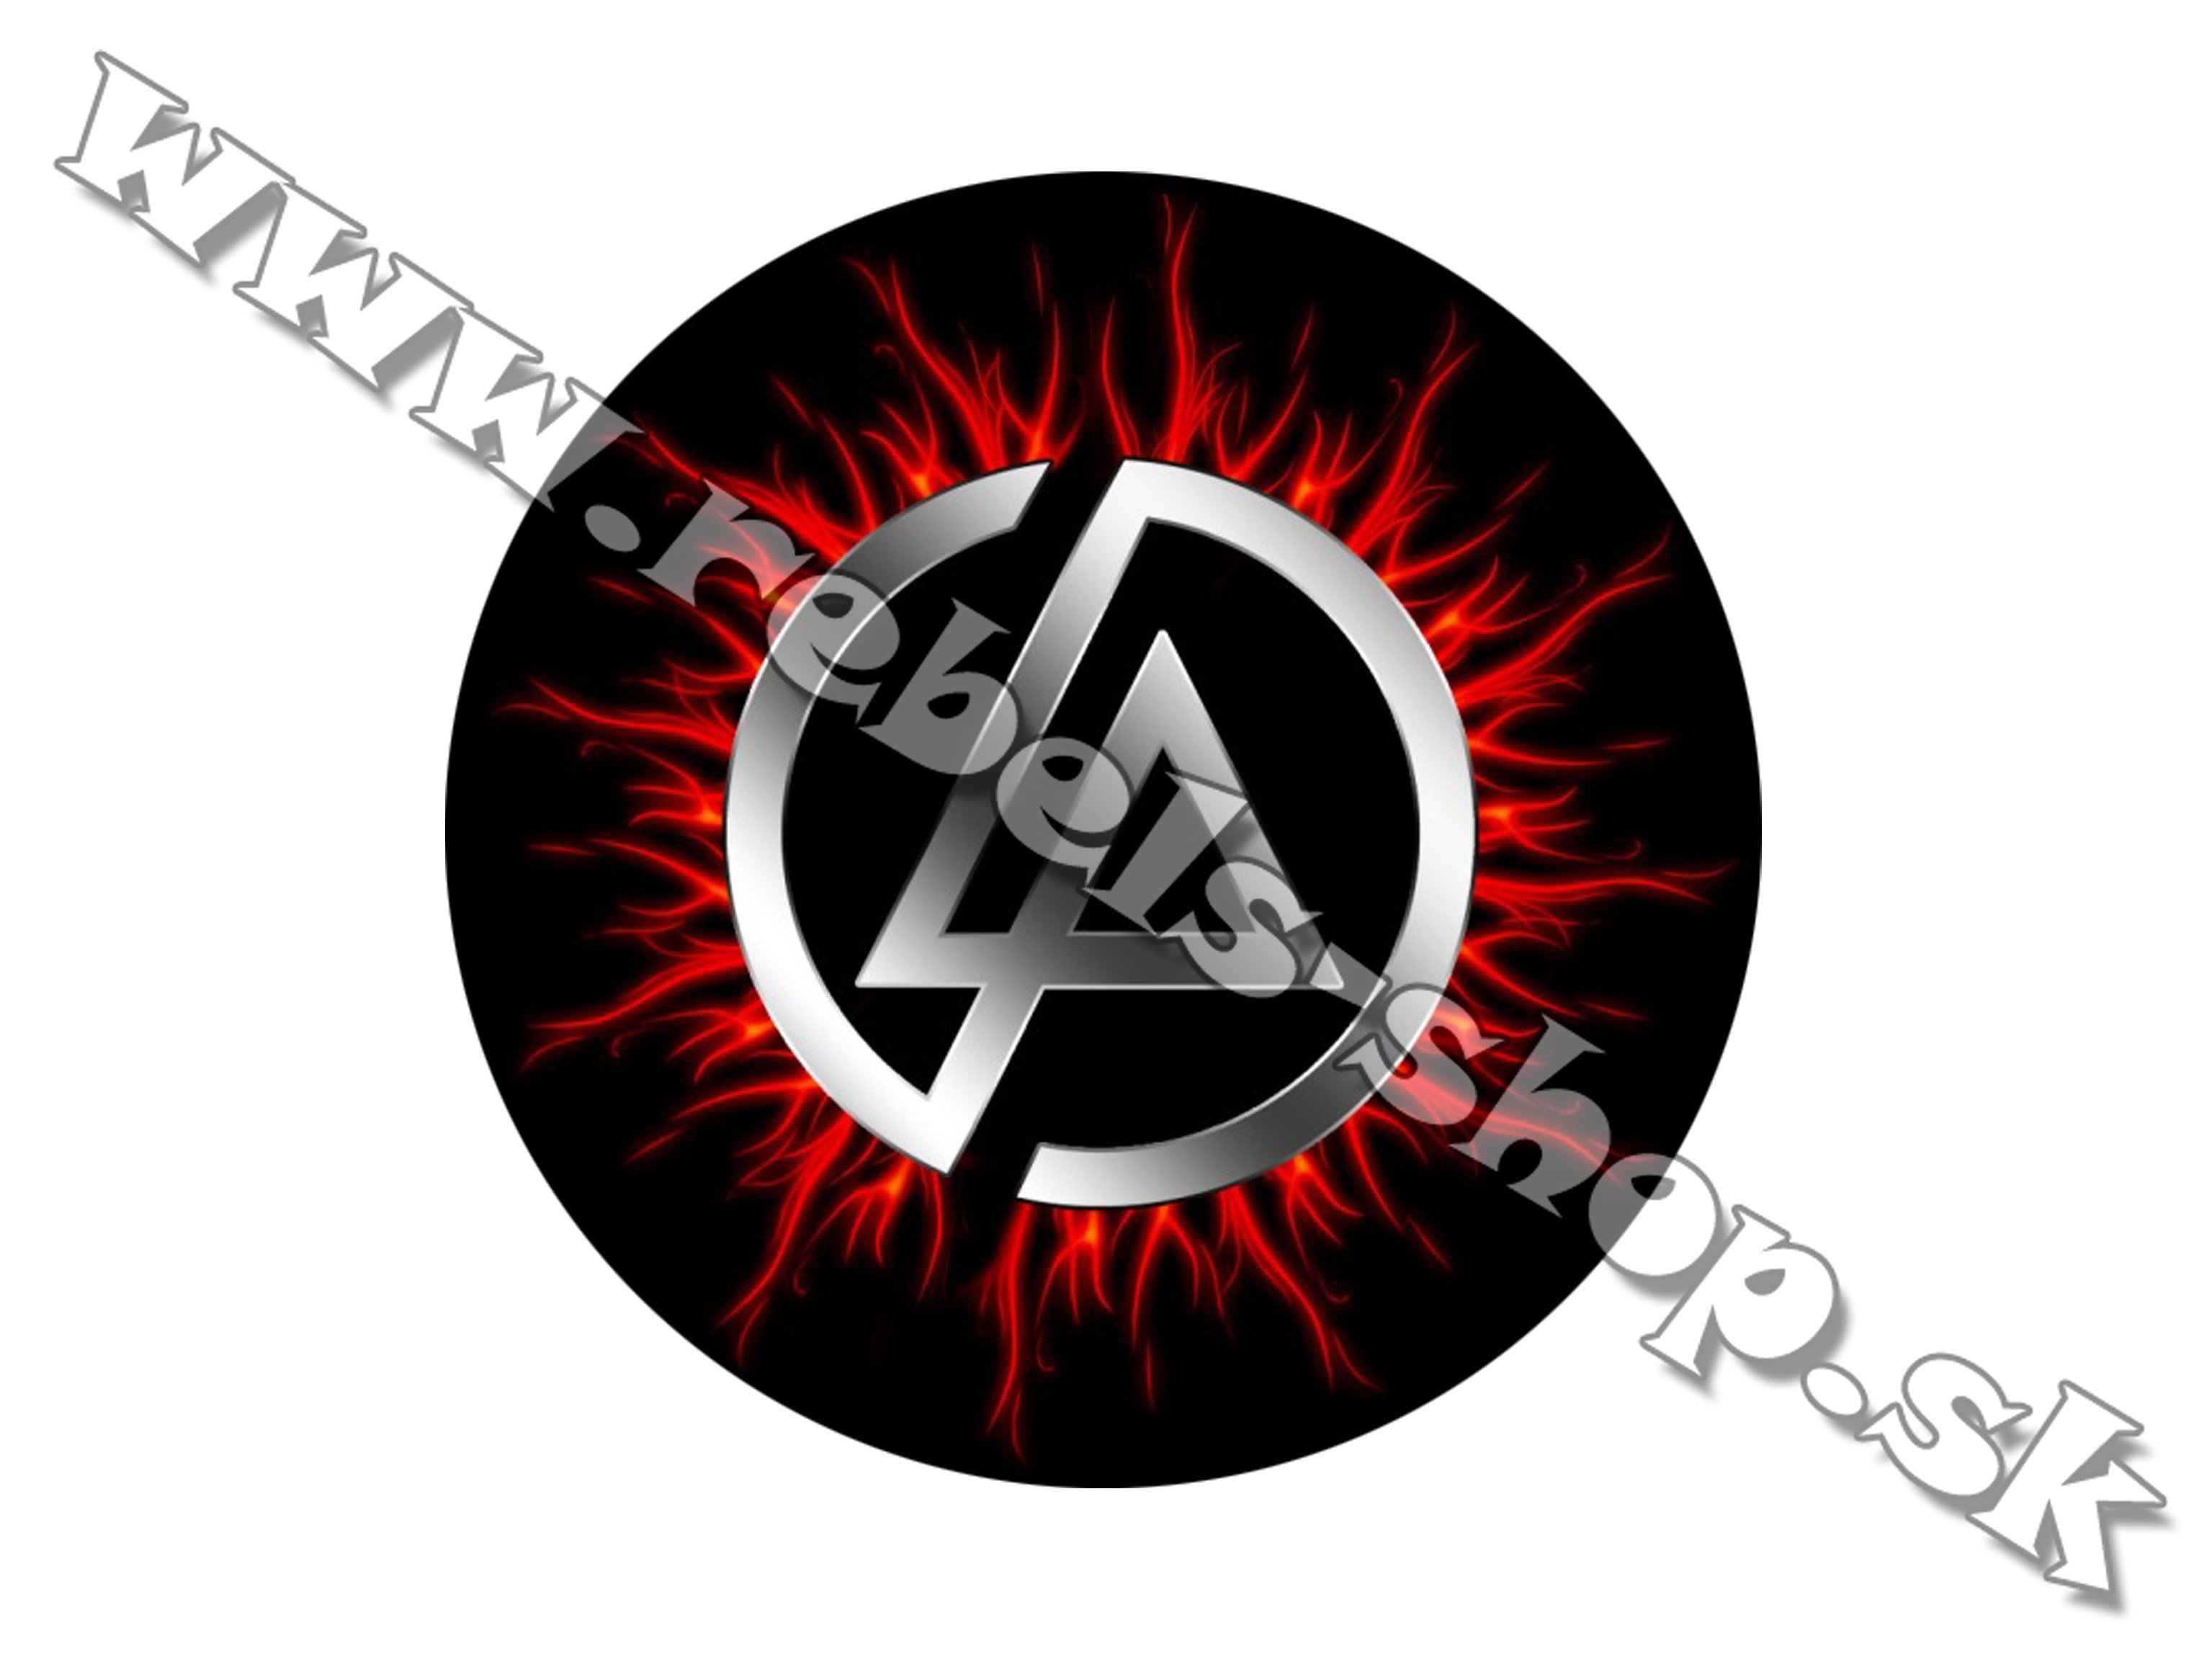 Odznak "Linkin Park"